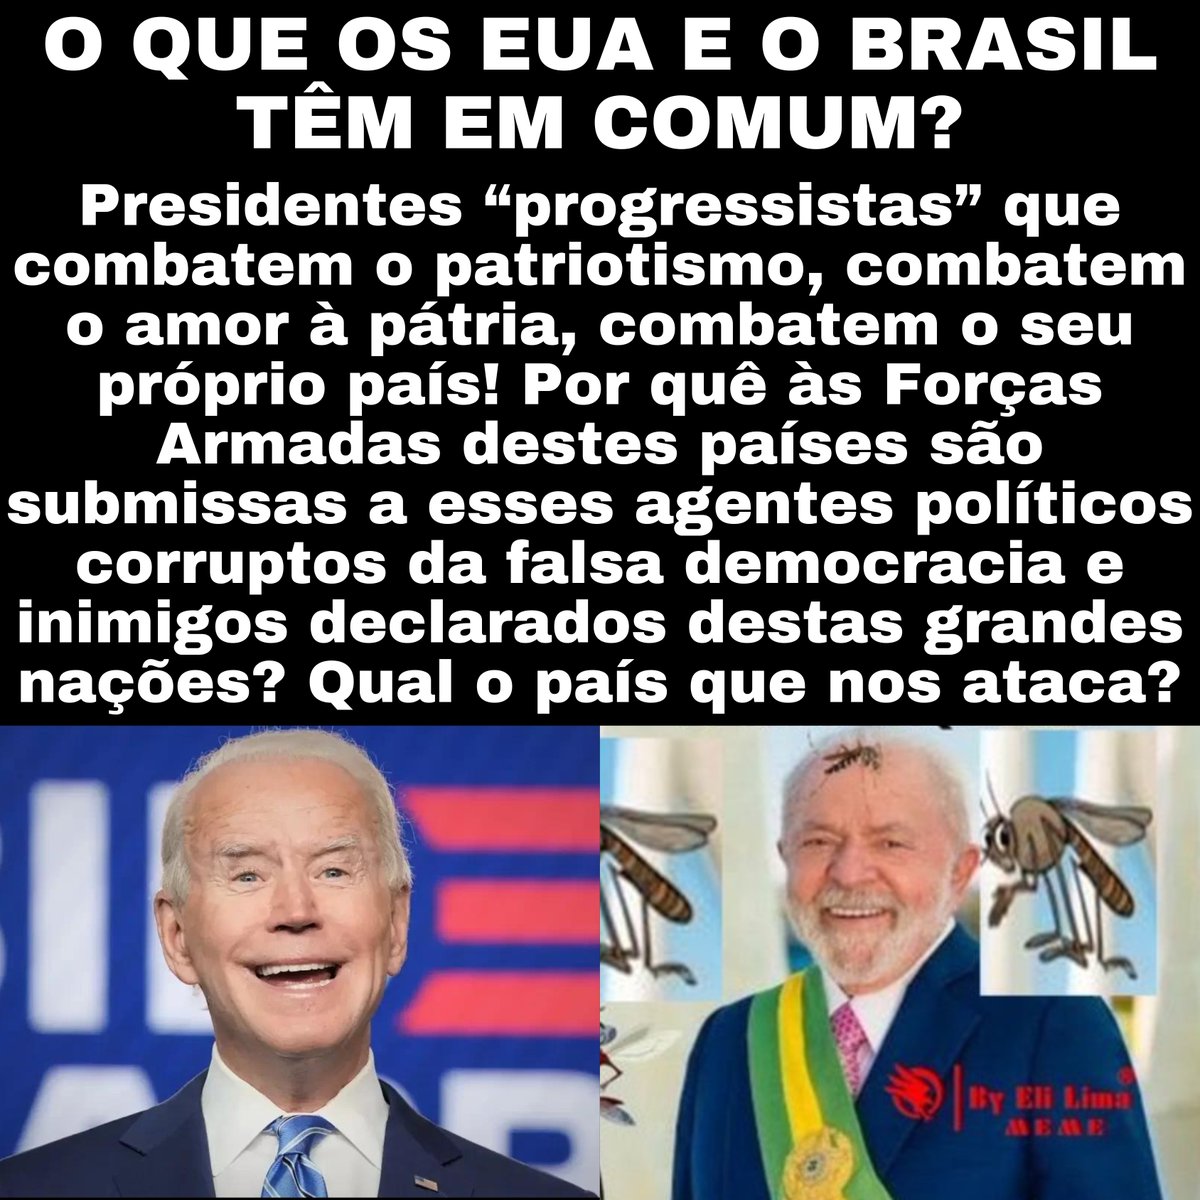 O que os EUA e o Brasil têm em comum? 
#SomosBrasil #Direita #DIREITAforteUNIDA #DireitaSegueDireita #Bolsonaro #VoltaBolsonaro #OsPingosNosis #TaNaRoda #Opiniao #Brasil #foralula #PresiDengue #ExercitoBrasileiro #jornalismo #jornalismoindependente #Mito